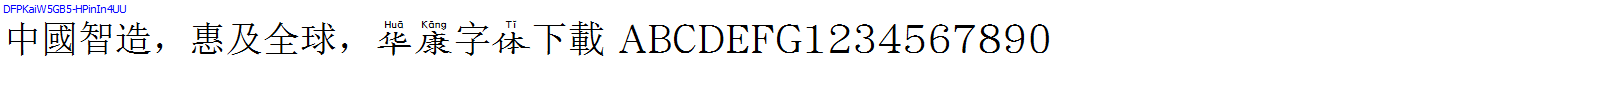 華康字體DFPKaiW5GB5-HPinIn4UU.TTF